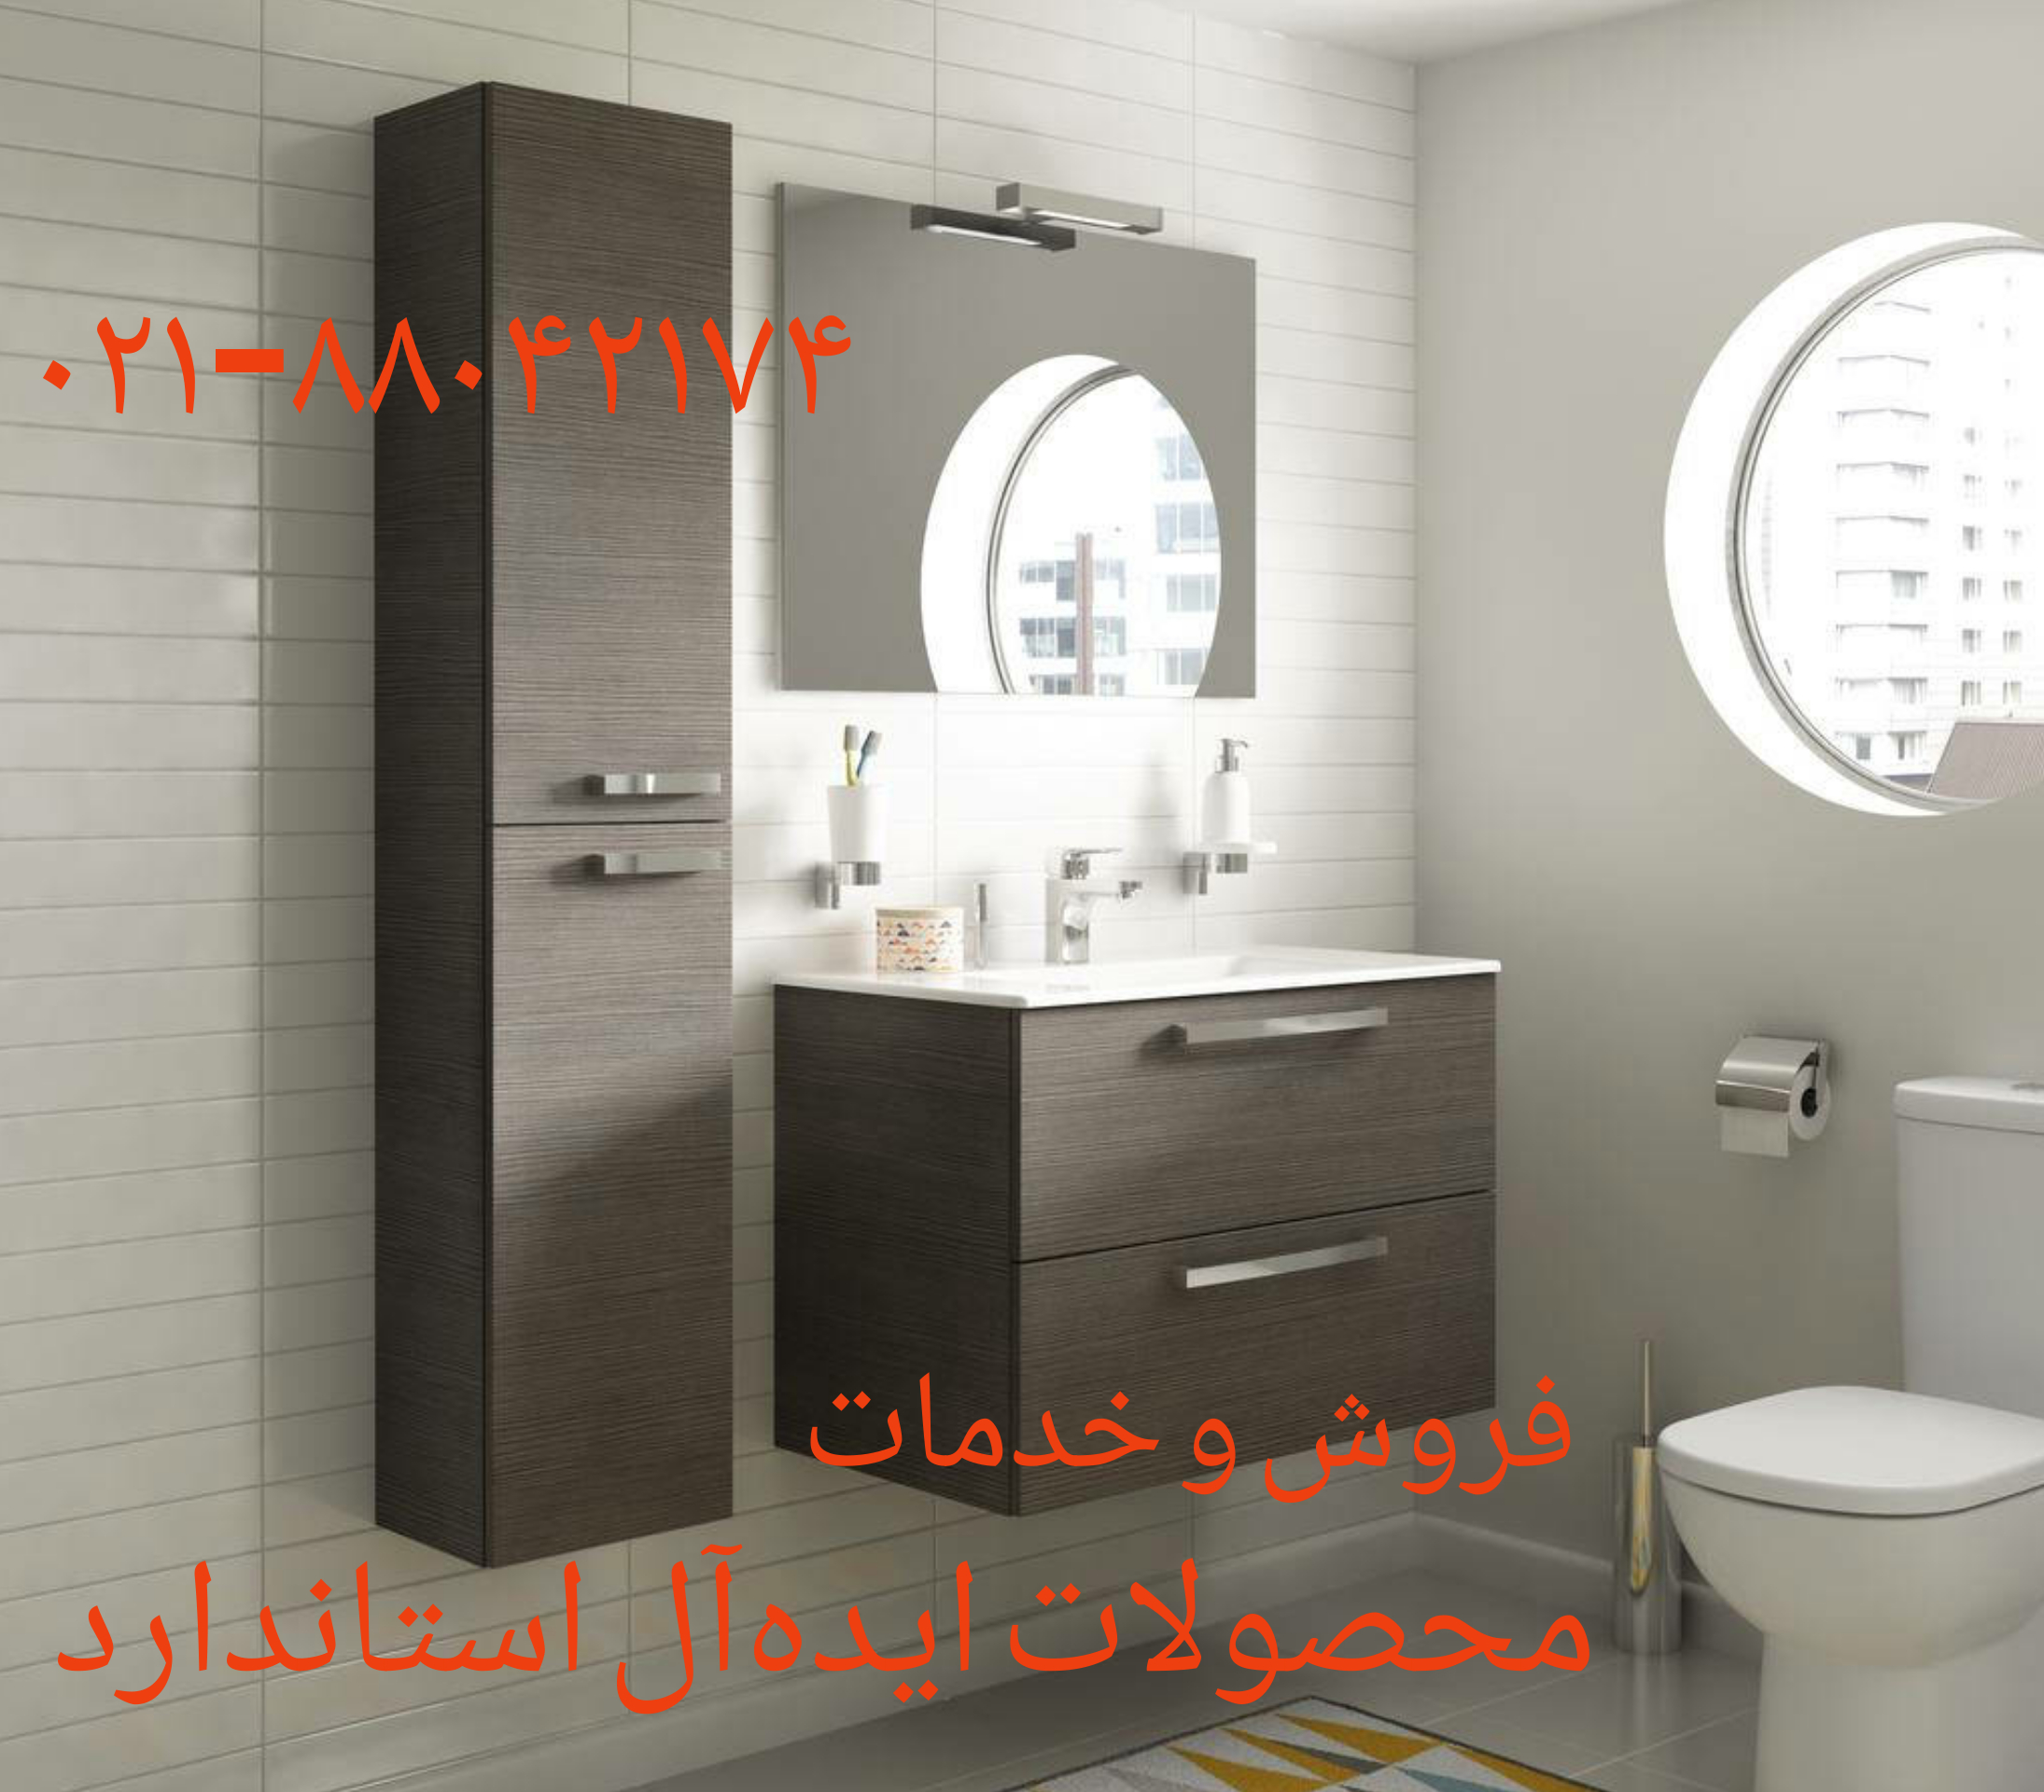 تعمیر و طراحی و ساخت کابینت حمام تهران ویلا 09121507825// ساخت کابینت حمام و روشویی